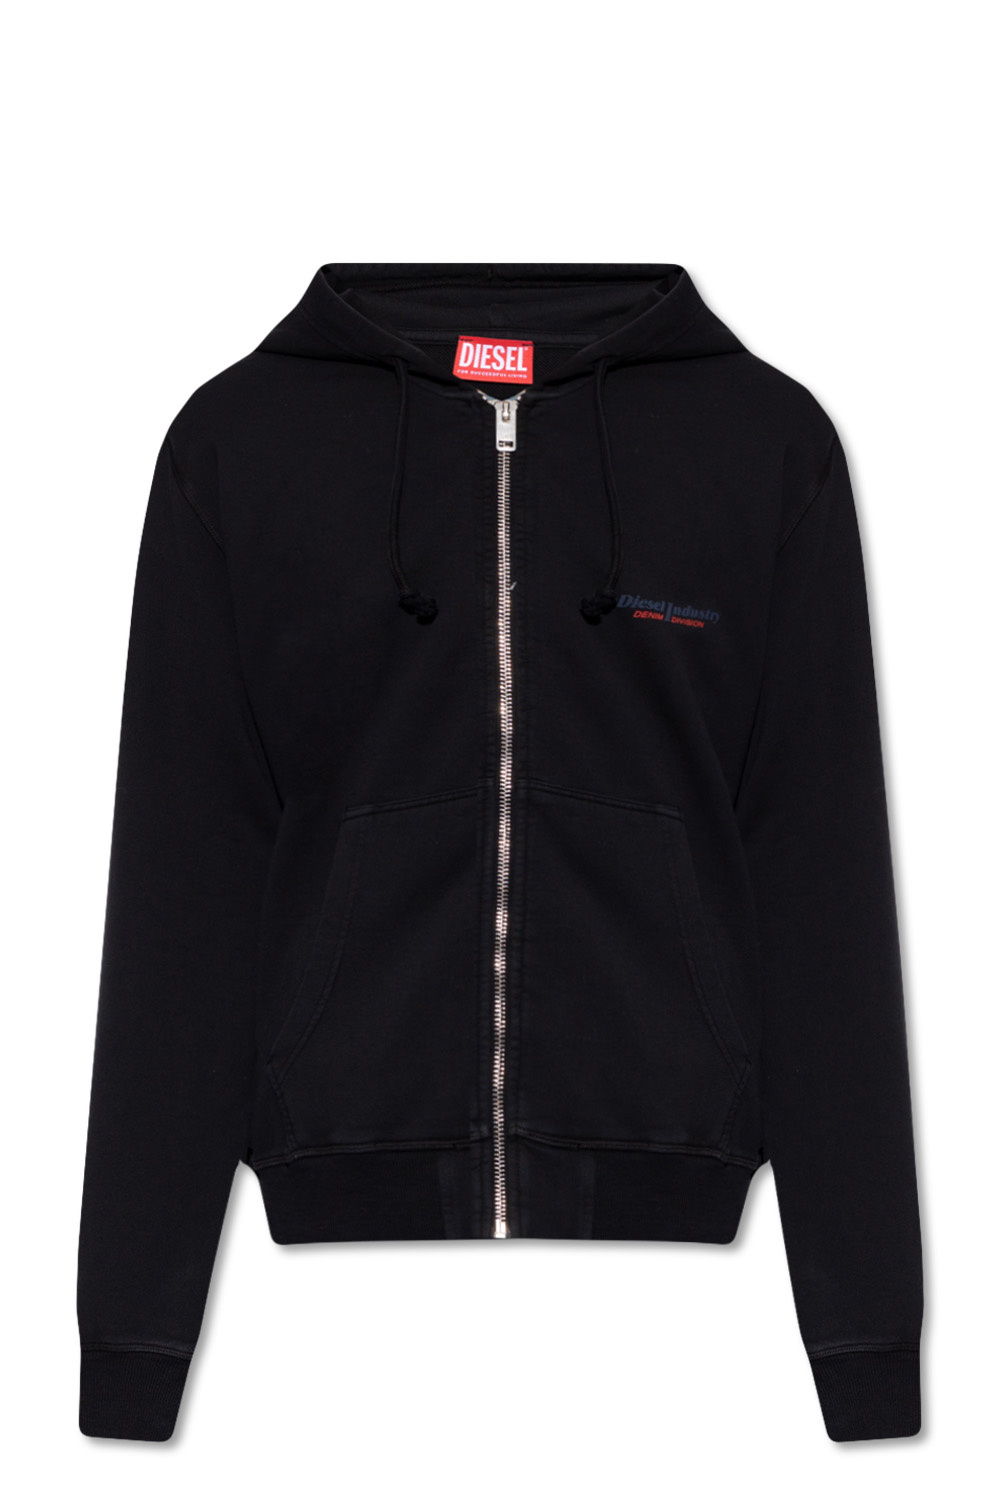 Black 'S-Ginn' hoodie Diesel - Vitkac GB